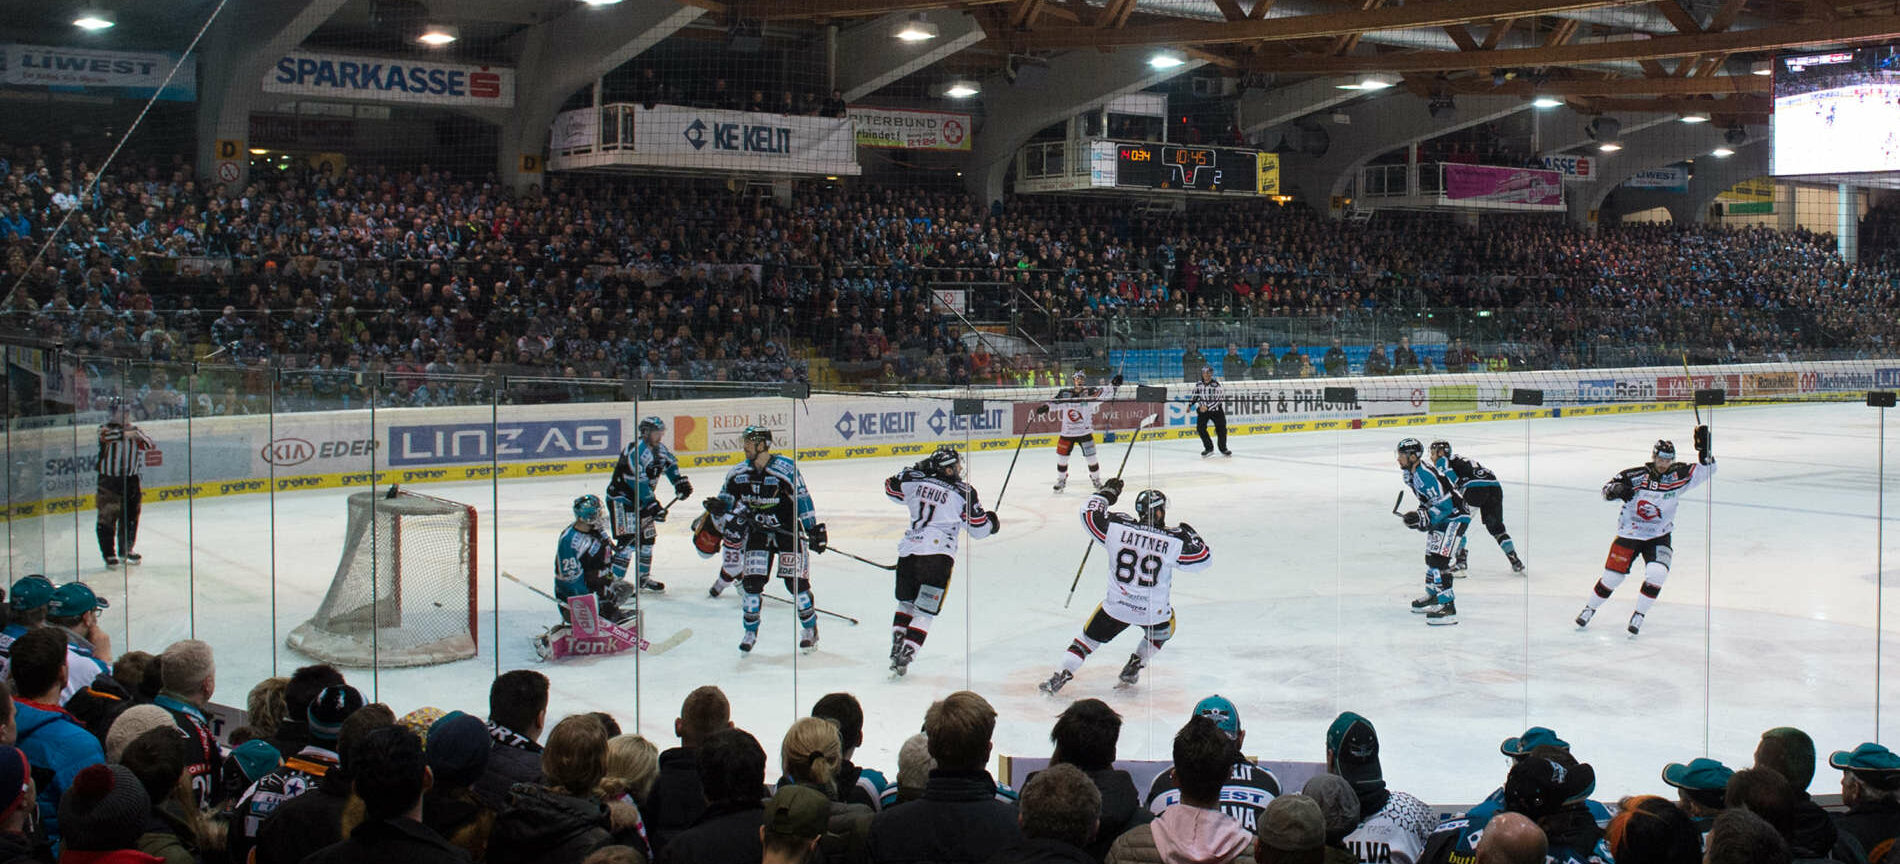 In der Linzer EisArena soll auch künftig Eishockeysport gezeigt werden, allerdings nicht mehr von den Black Wings.